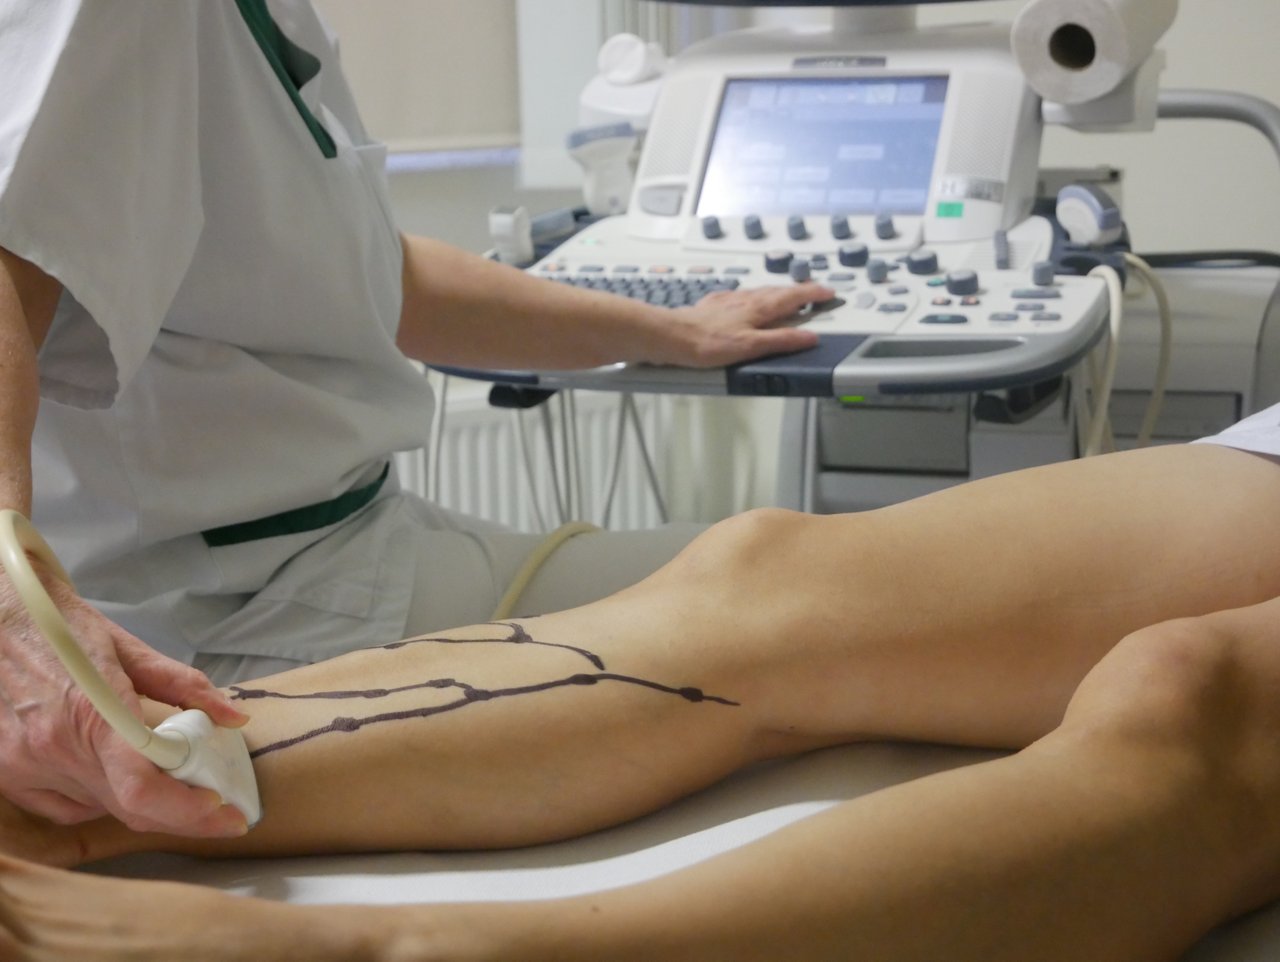 Krampfaderscreening der Beine eines Patienten  